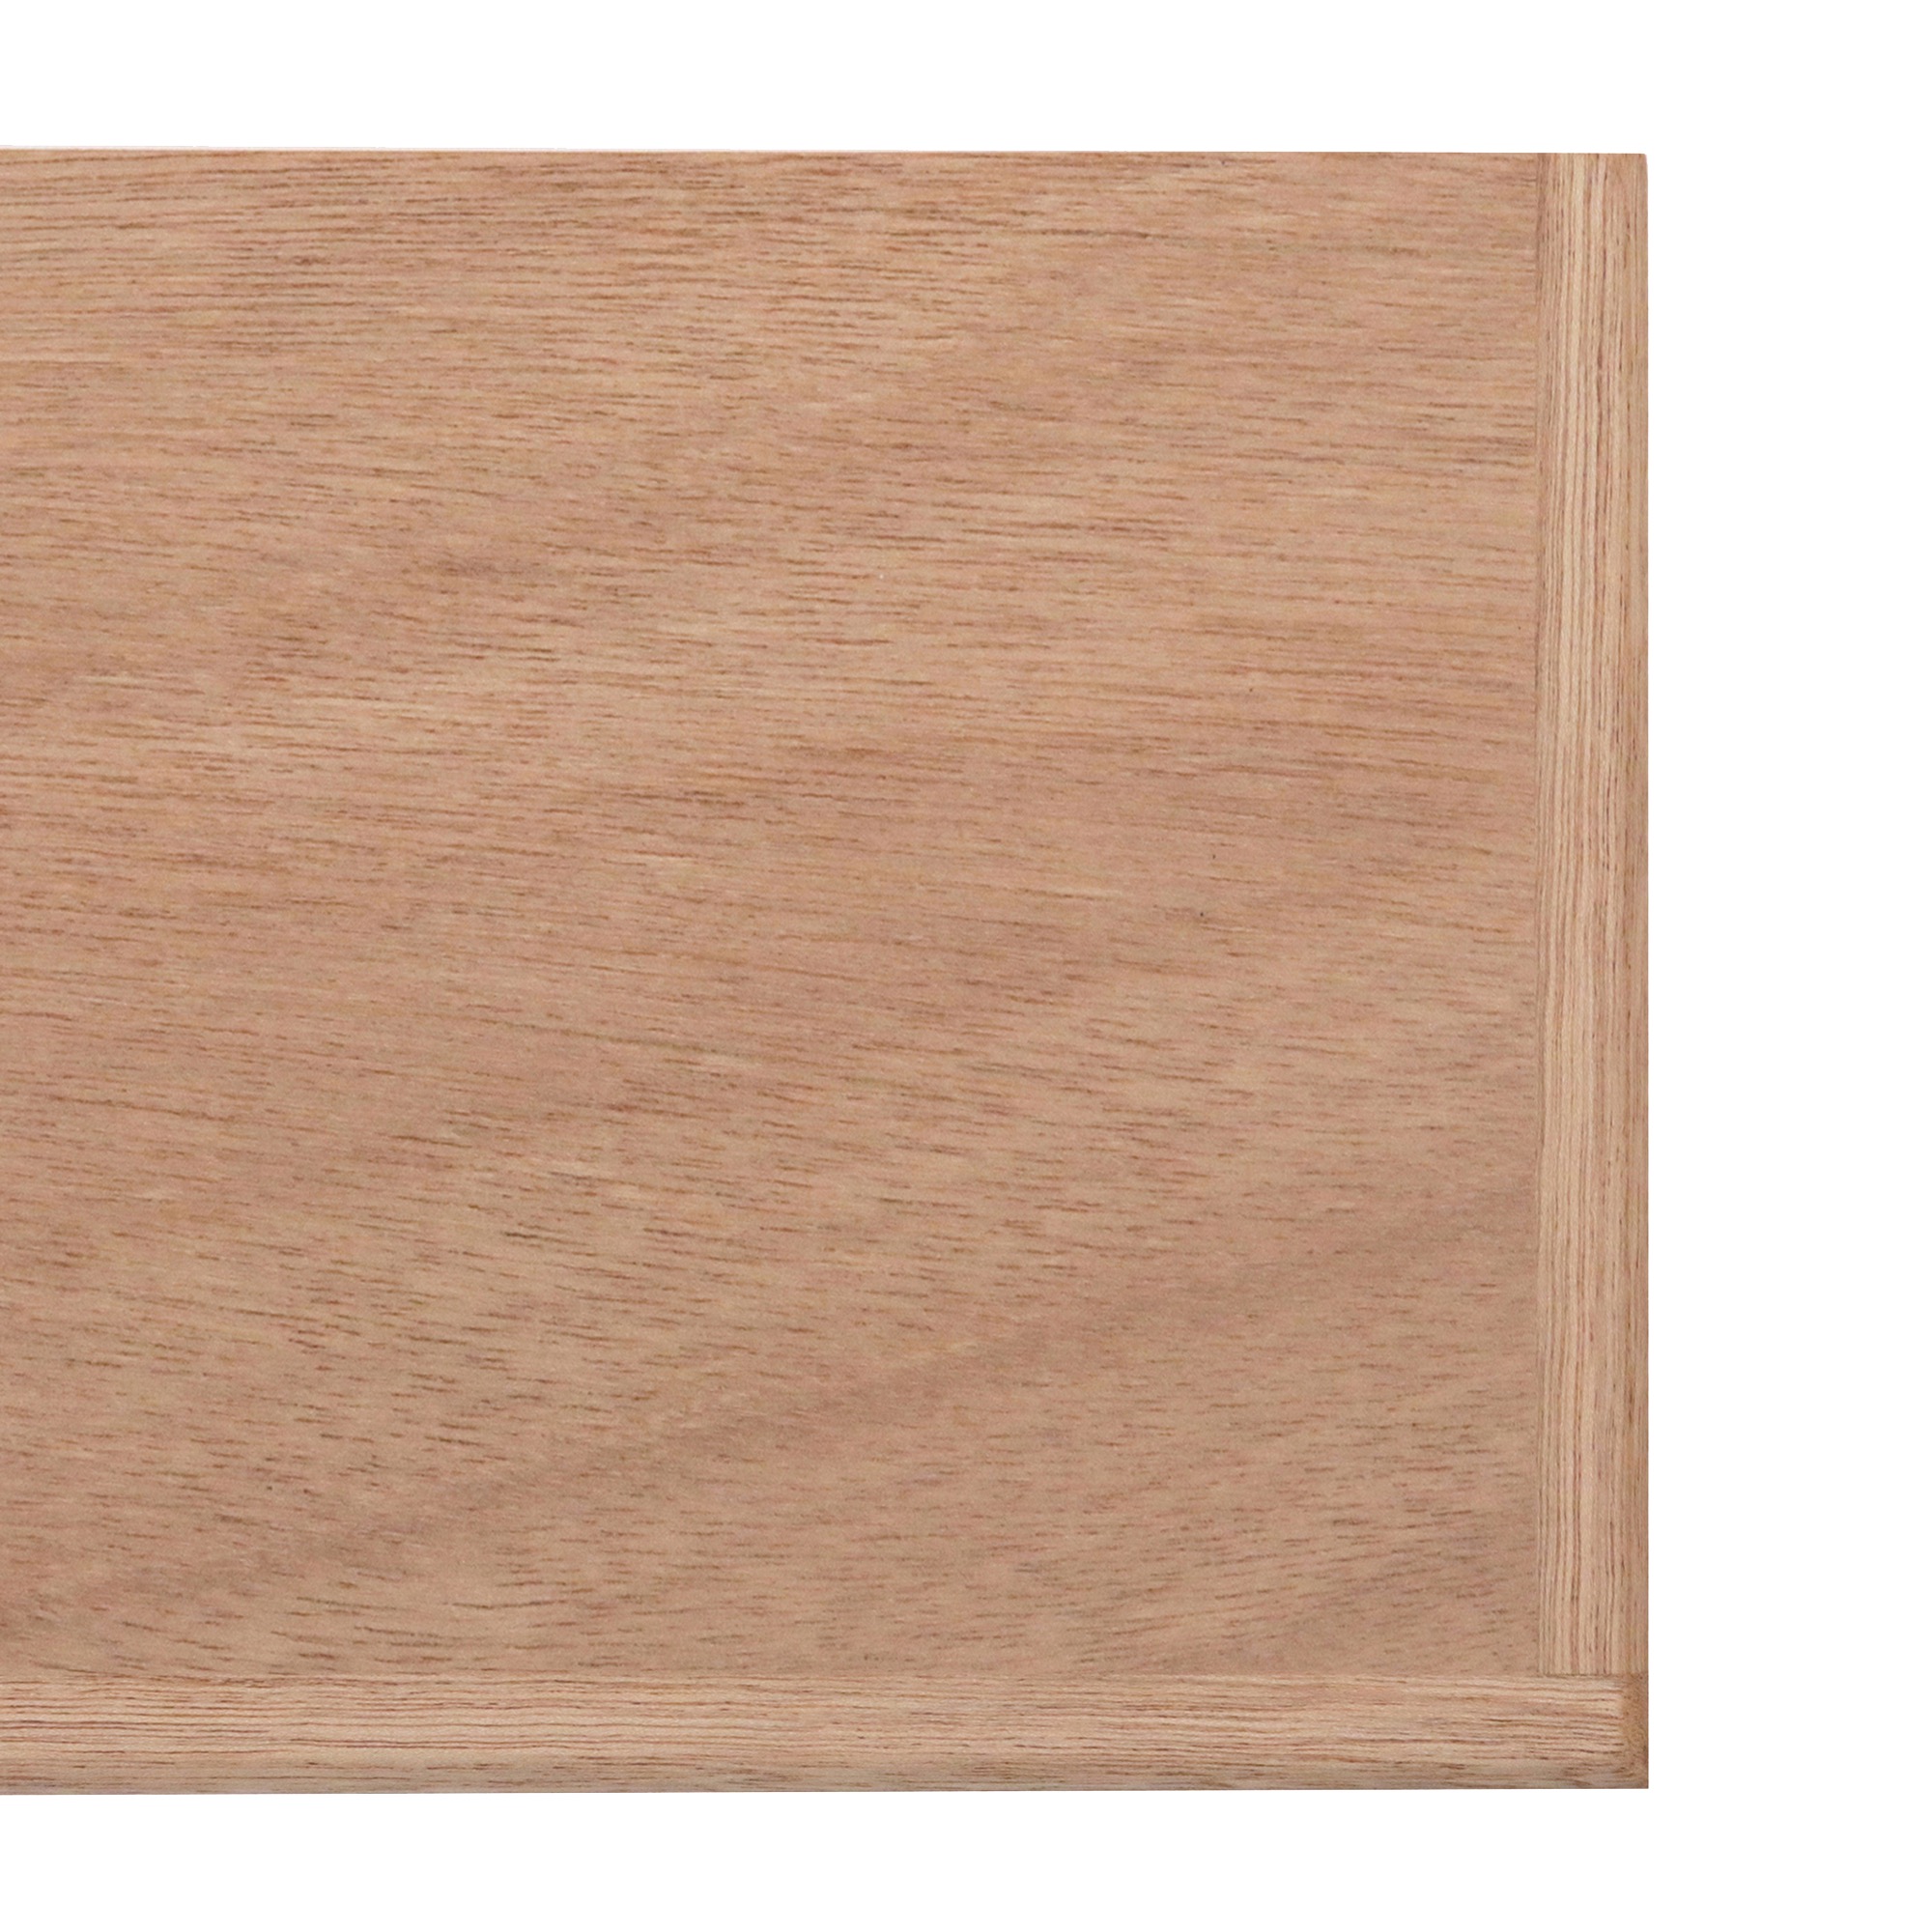 角丸棚板 ラワン×ラワン D285 PS-CP002-05-G015 3方の木口をラワンで仕上げています